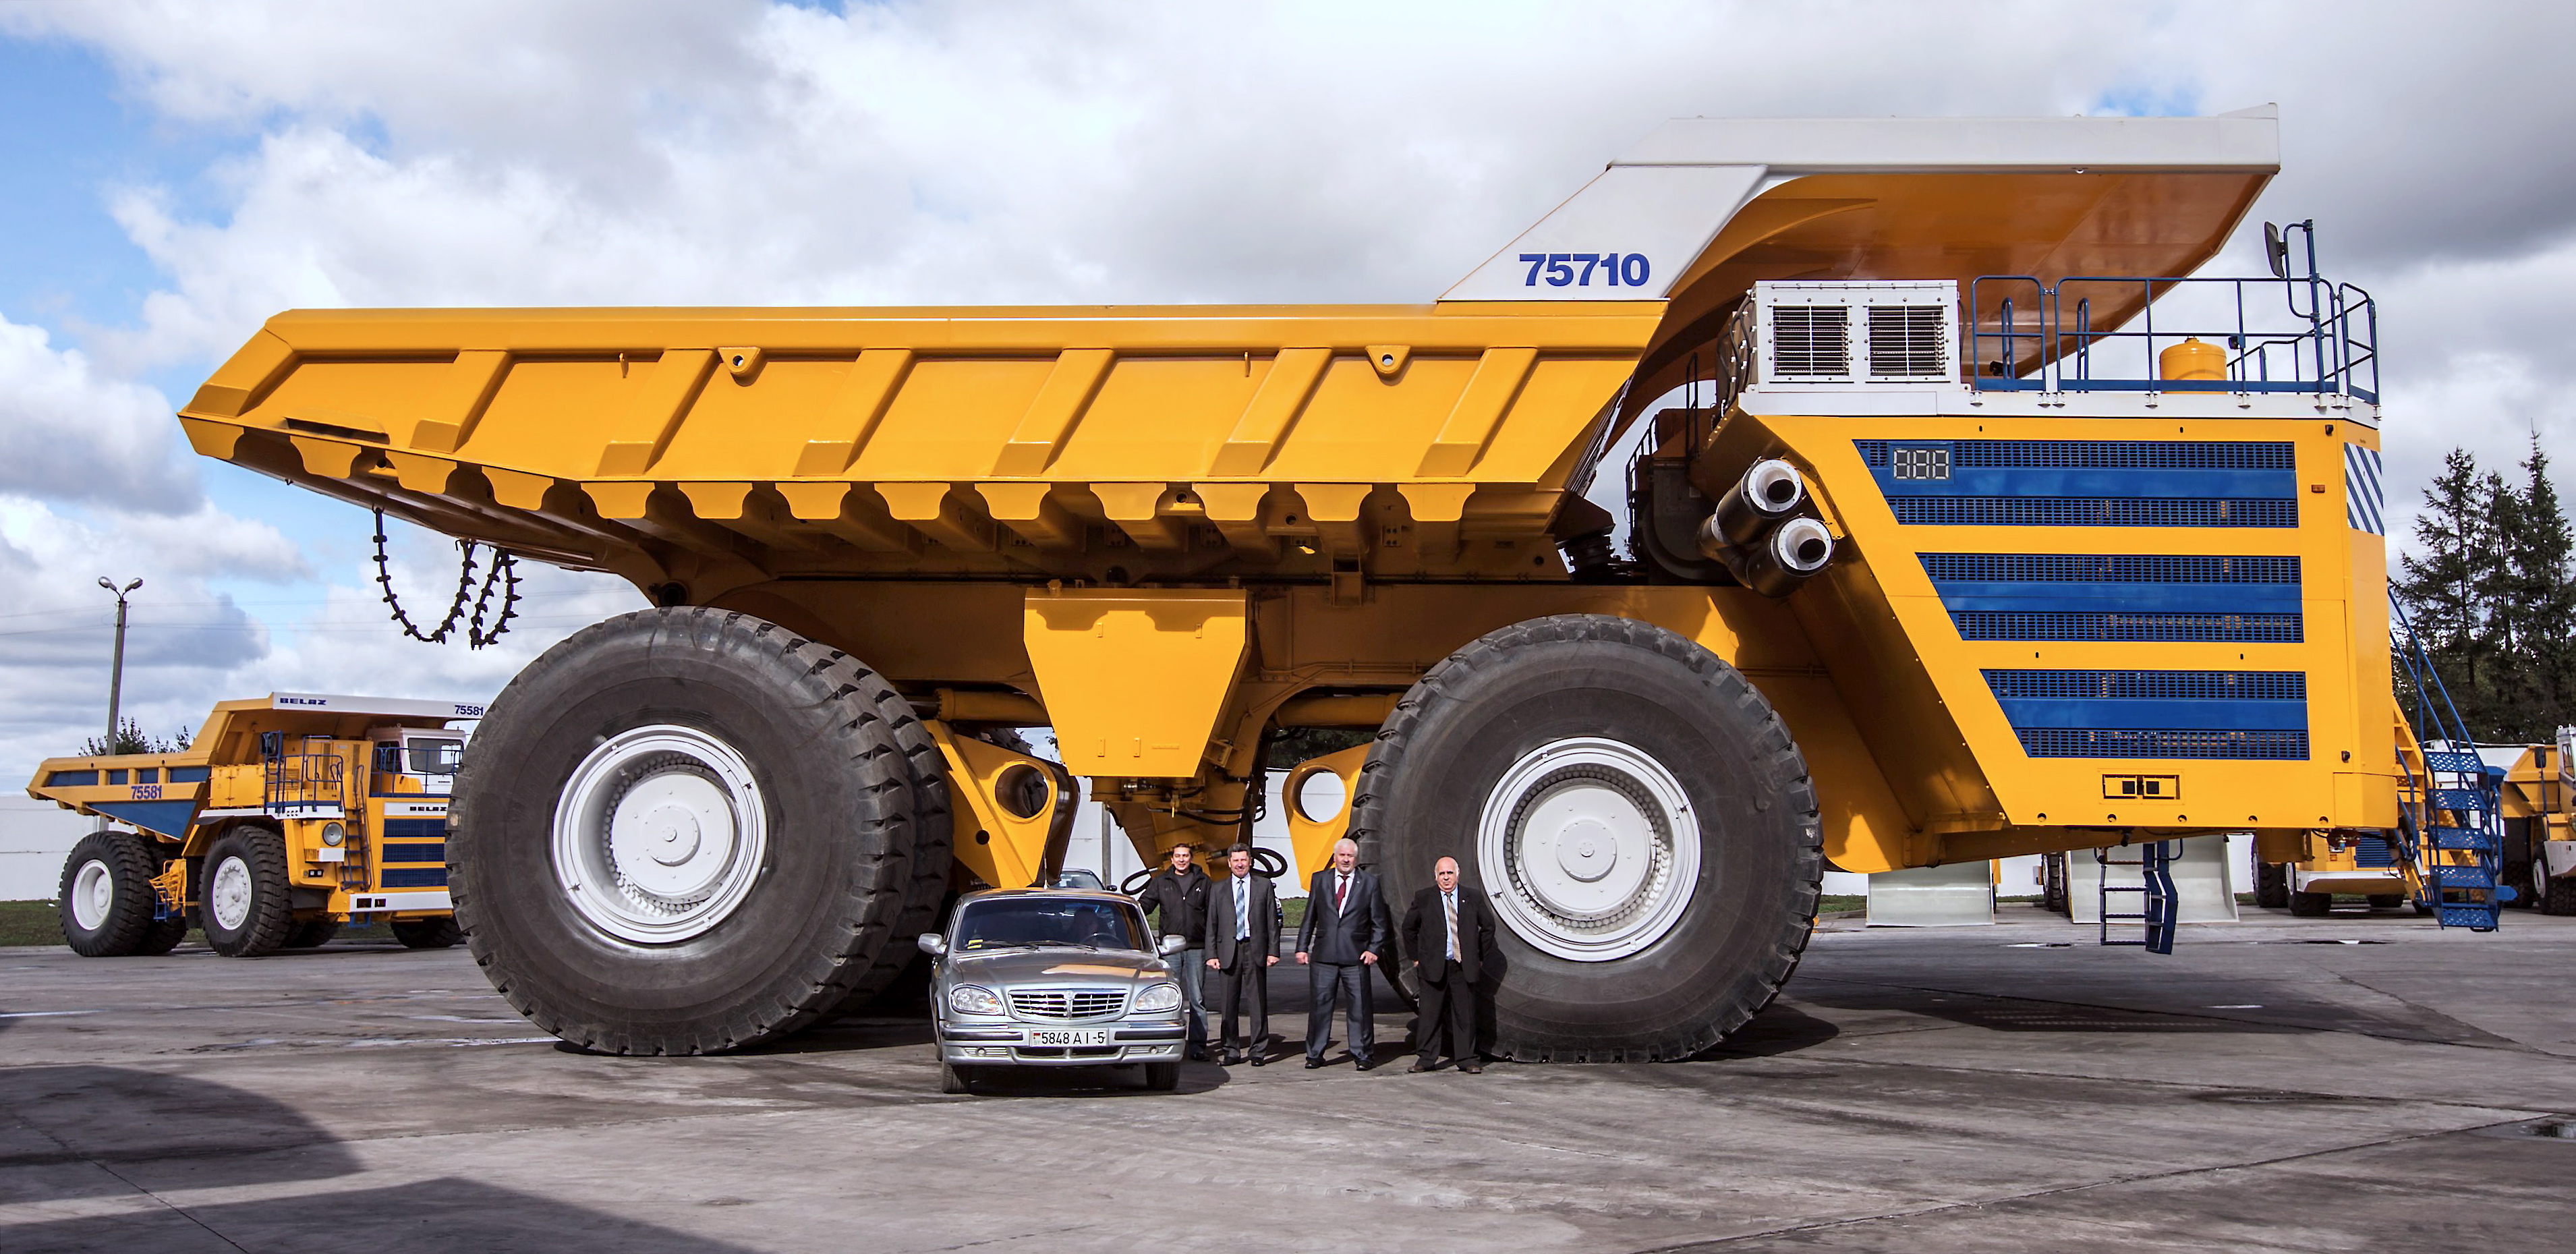 世界上最大自卸车长什么样?最大载重496吨